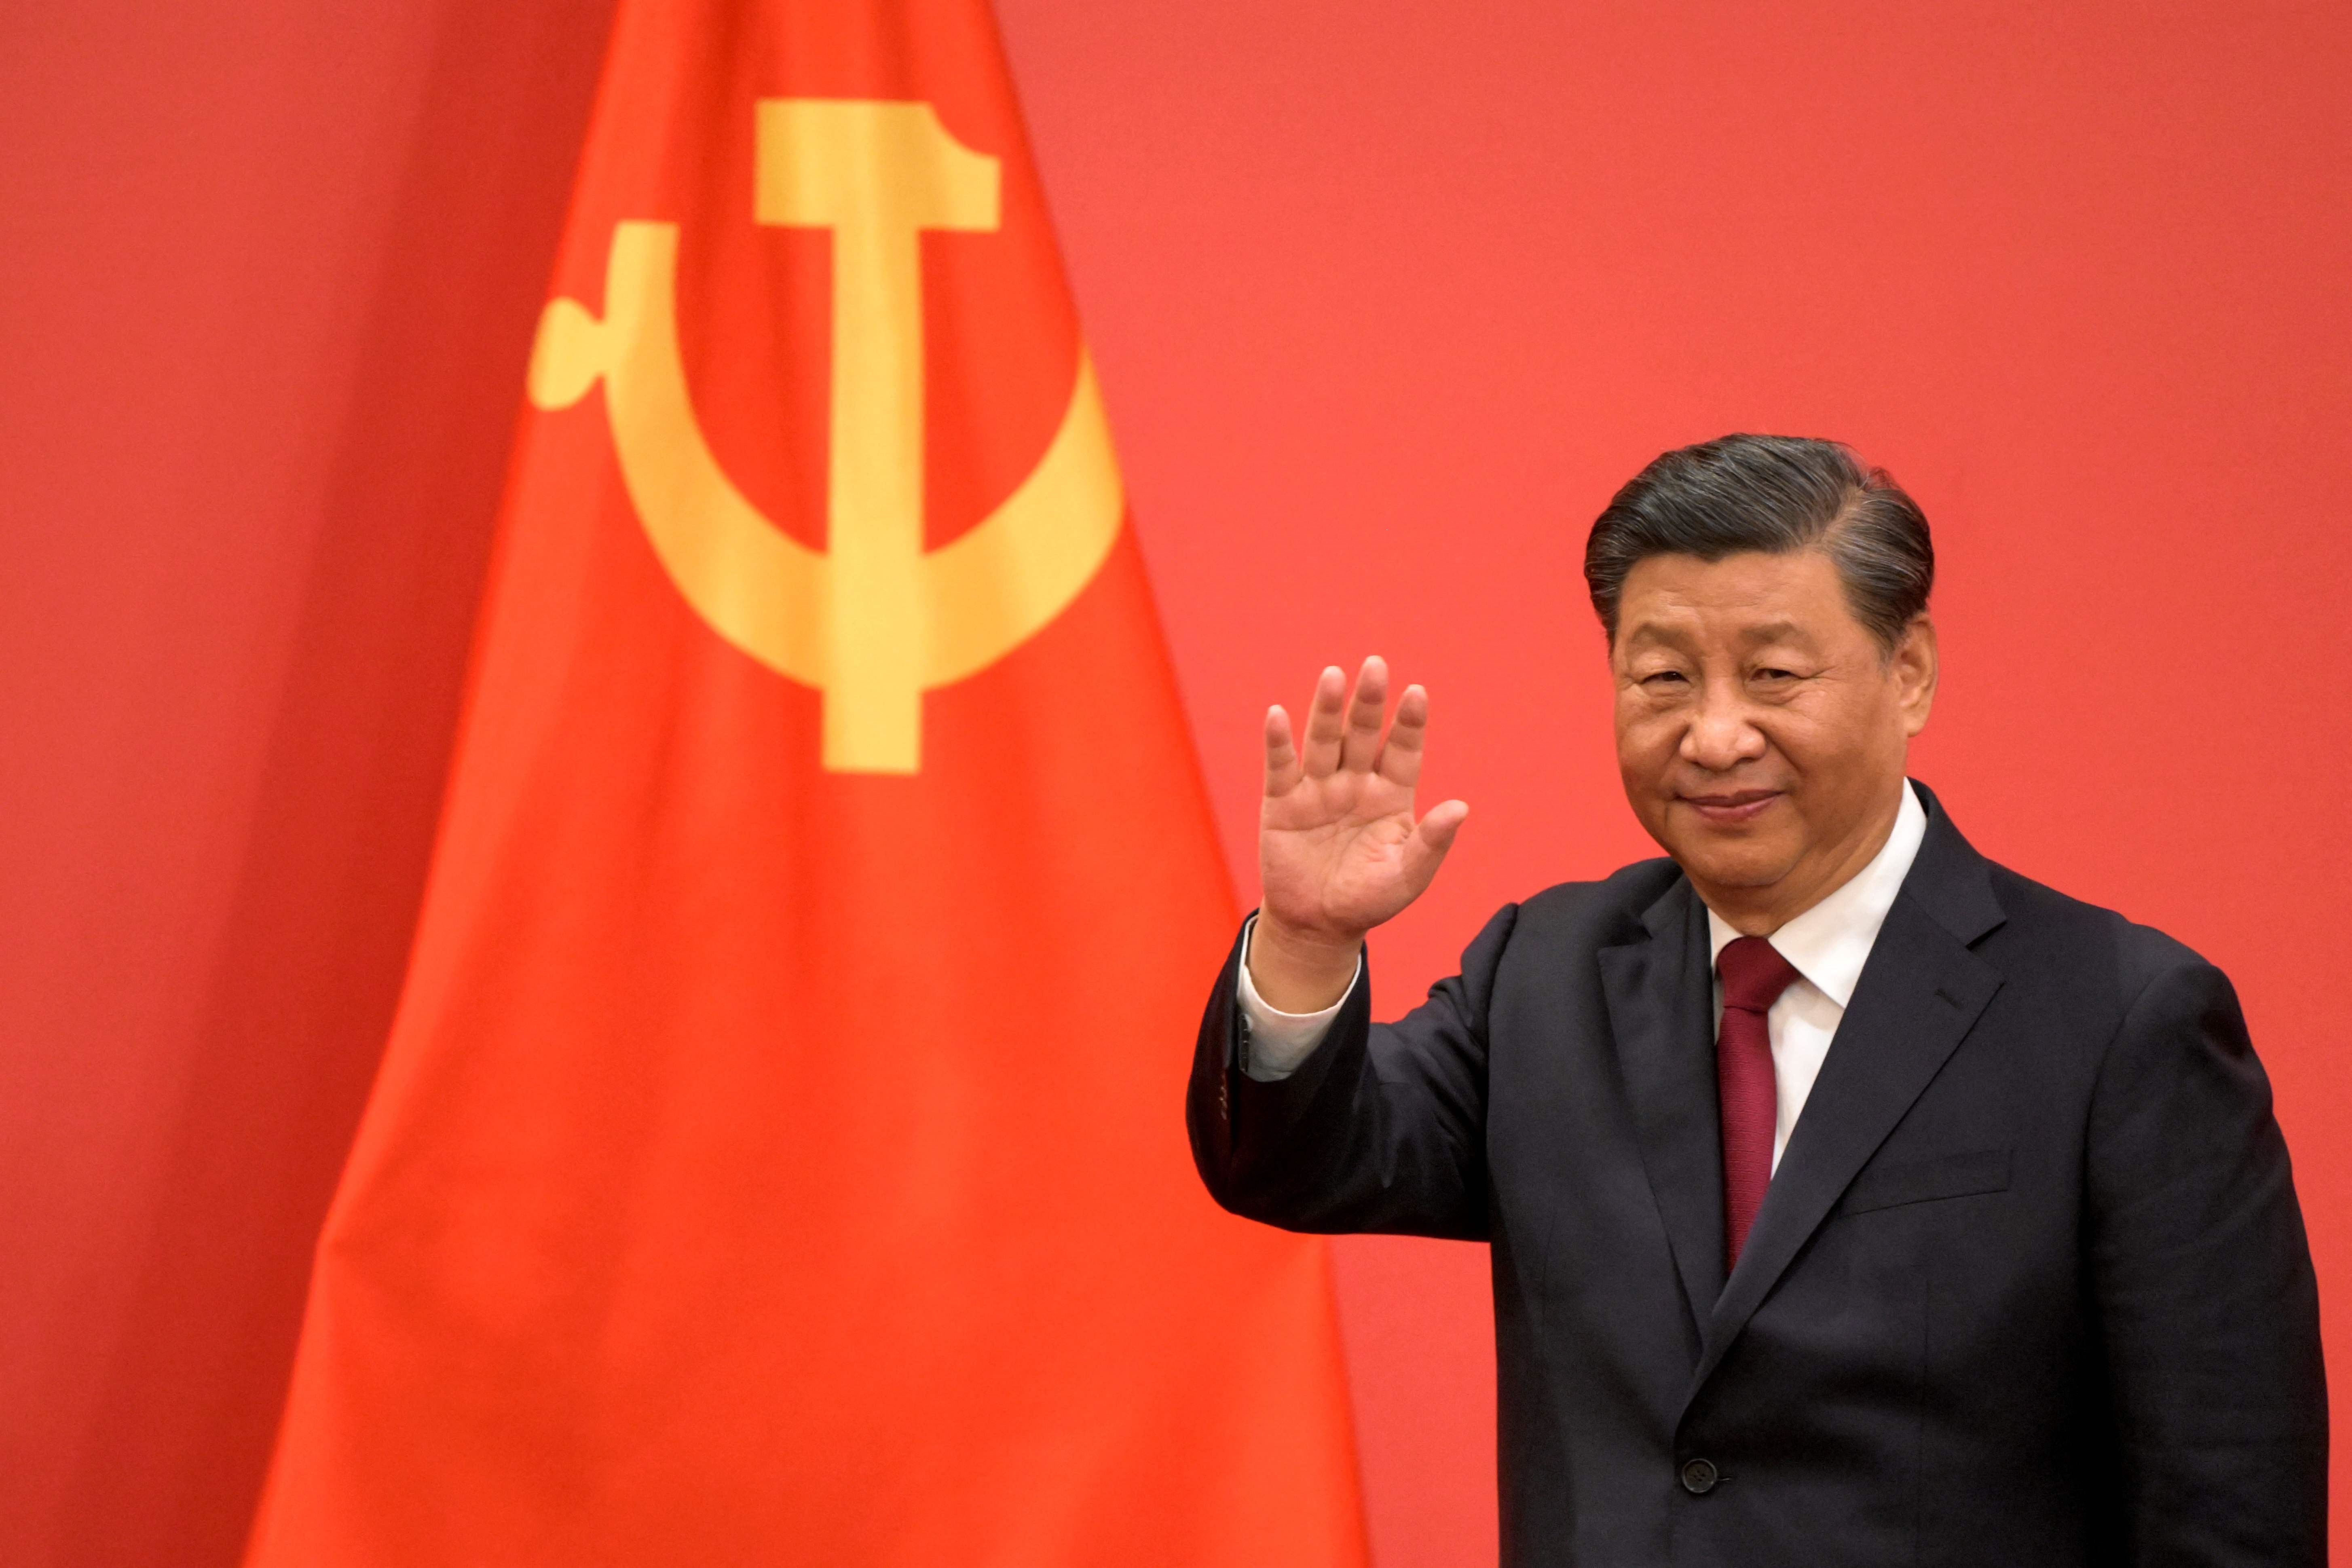 El presidente chino Xi Jinping se ha consolidado como el máximo líder del Partido Comunista y se perfila para un tercer mandato presidencial. Durante su mandato China ha impulsado una política internacional expansionista que y se nota en Latinoamérica. (Foto Prensa Libre: AFP)